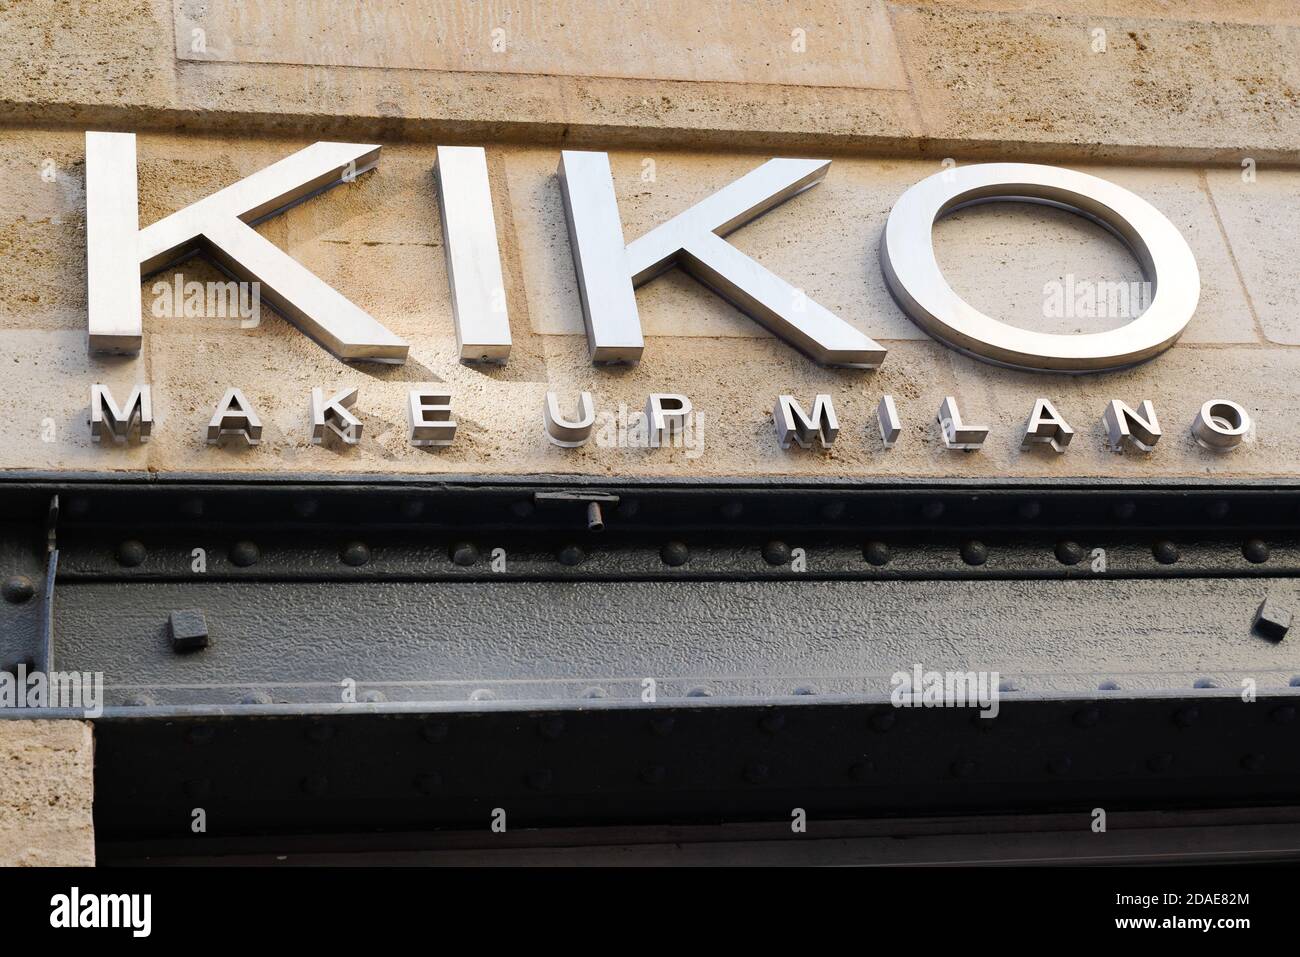 Bordeaux , Aquitaine / Francia - 11 01 2020 : Kiko make up milano shop logo  e testo segno di negozio cosmetici società con sede in italia Foto stock -  Alamy